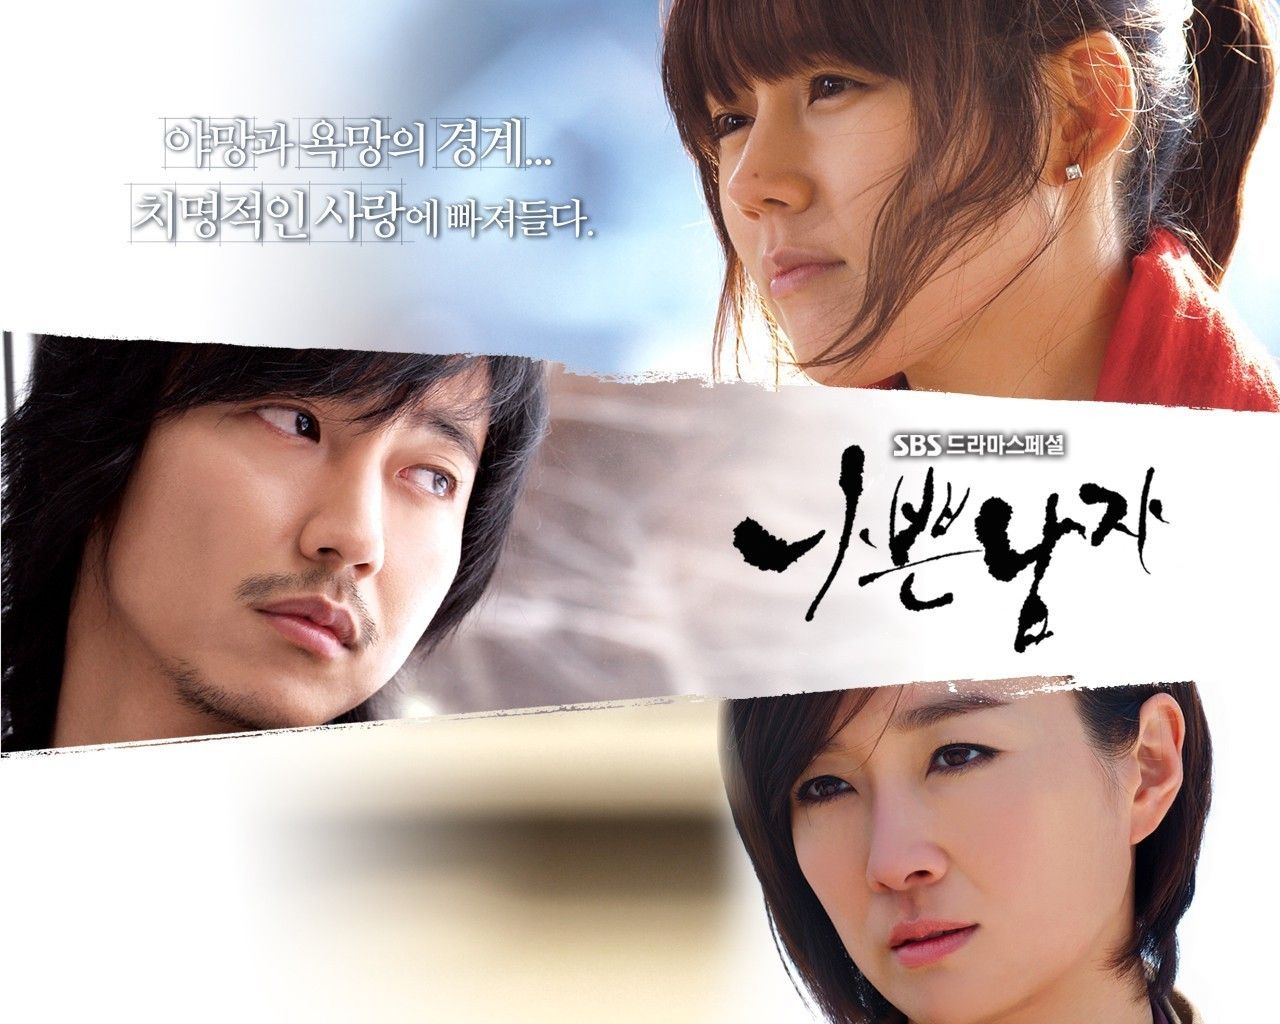 bad guy - Korean Dramas Wallpaper (21700371) - Fanpop